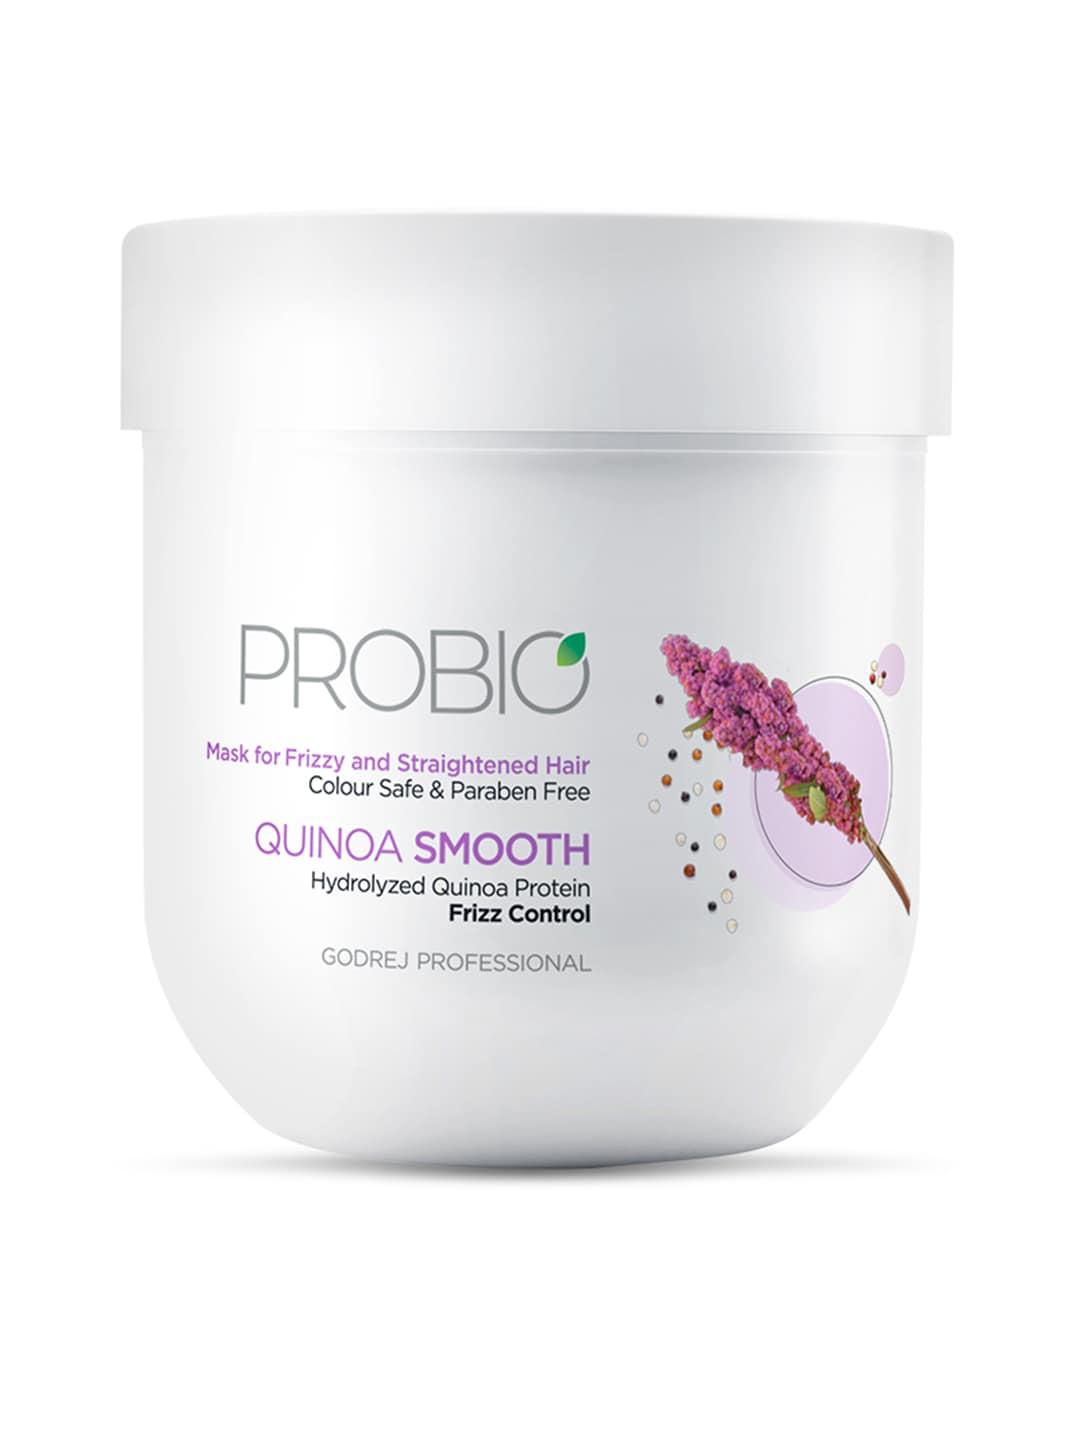 godrej-professional-probio-quinoa-smooth-mask-for-frizz-control---200-g